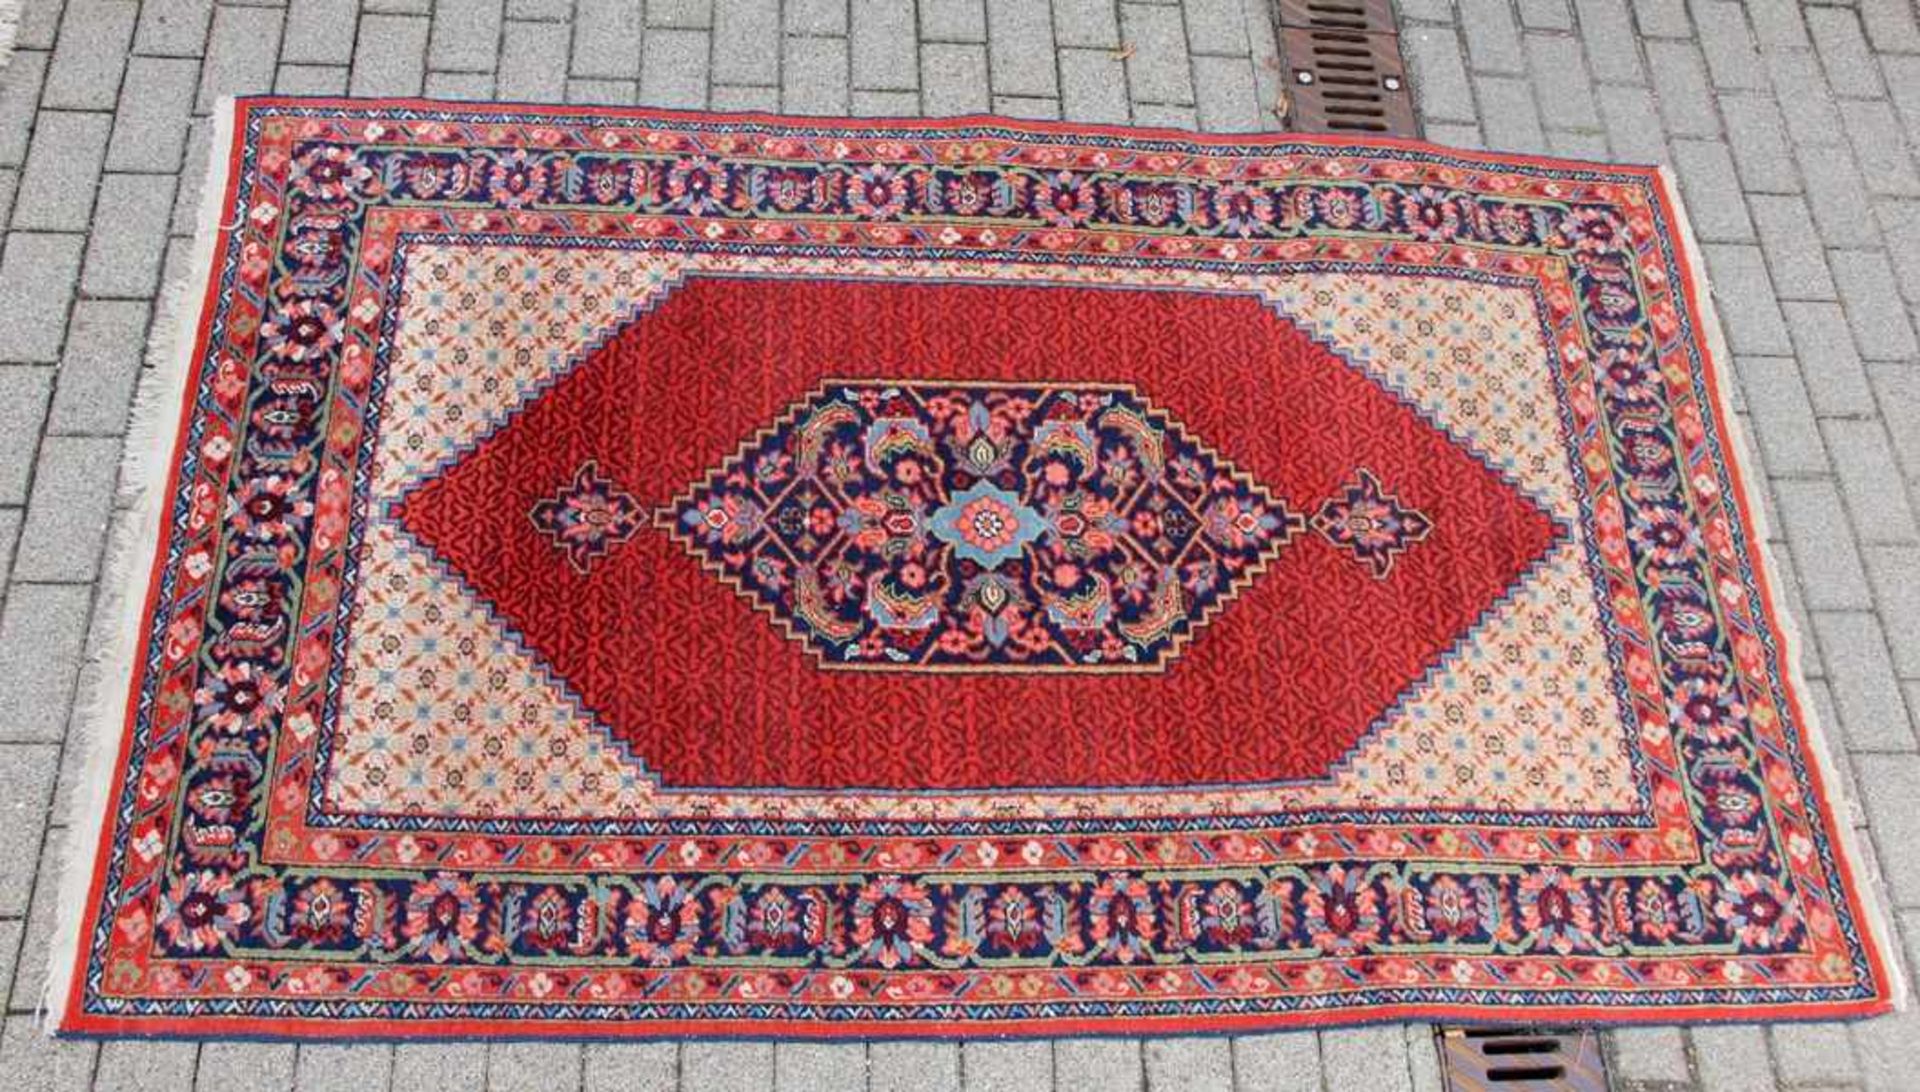 Perser-TeppichPersien, Teppich, mittig rautenförmiges medaillon, zahlreiche Blüten u. Ornamente